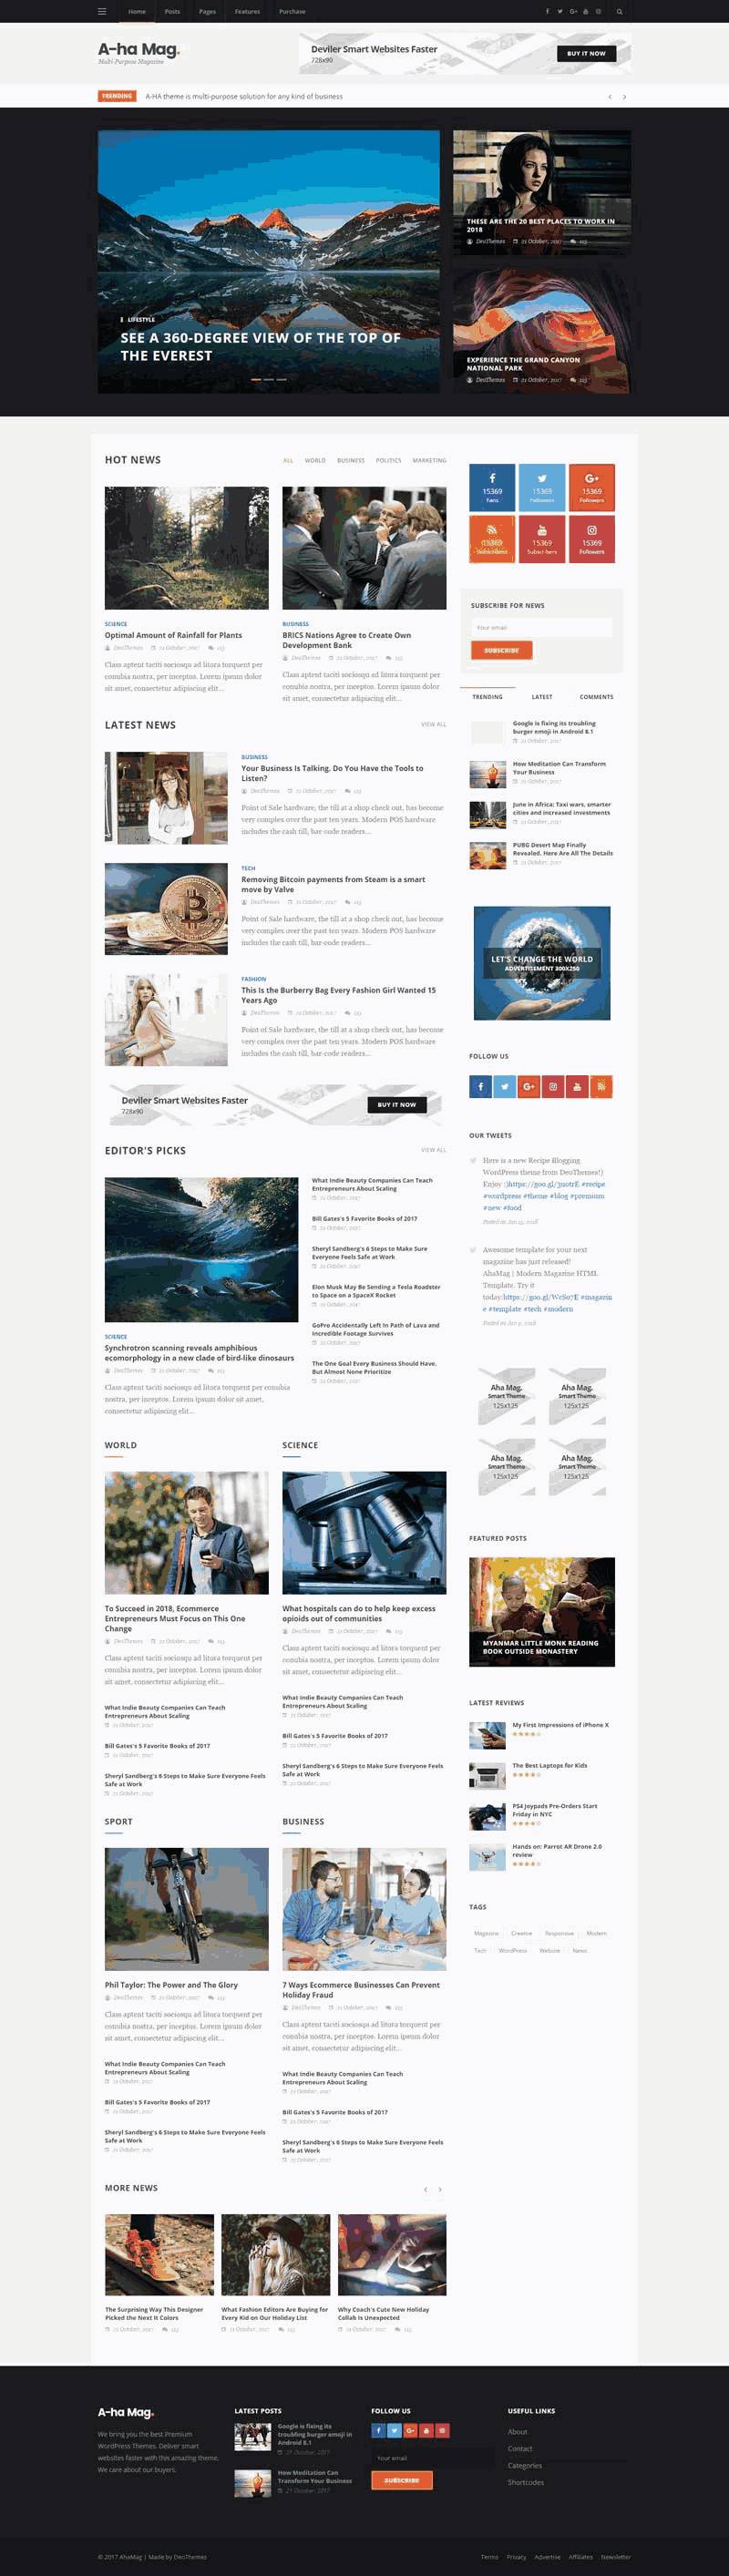 黑色新闻资讯图片博客WordPress模板主题演示图